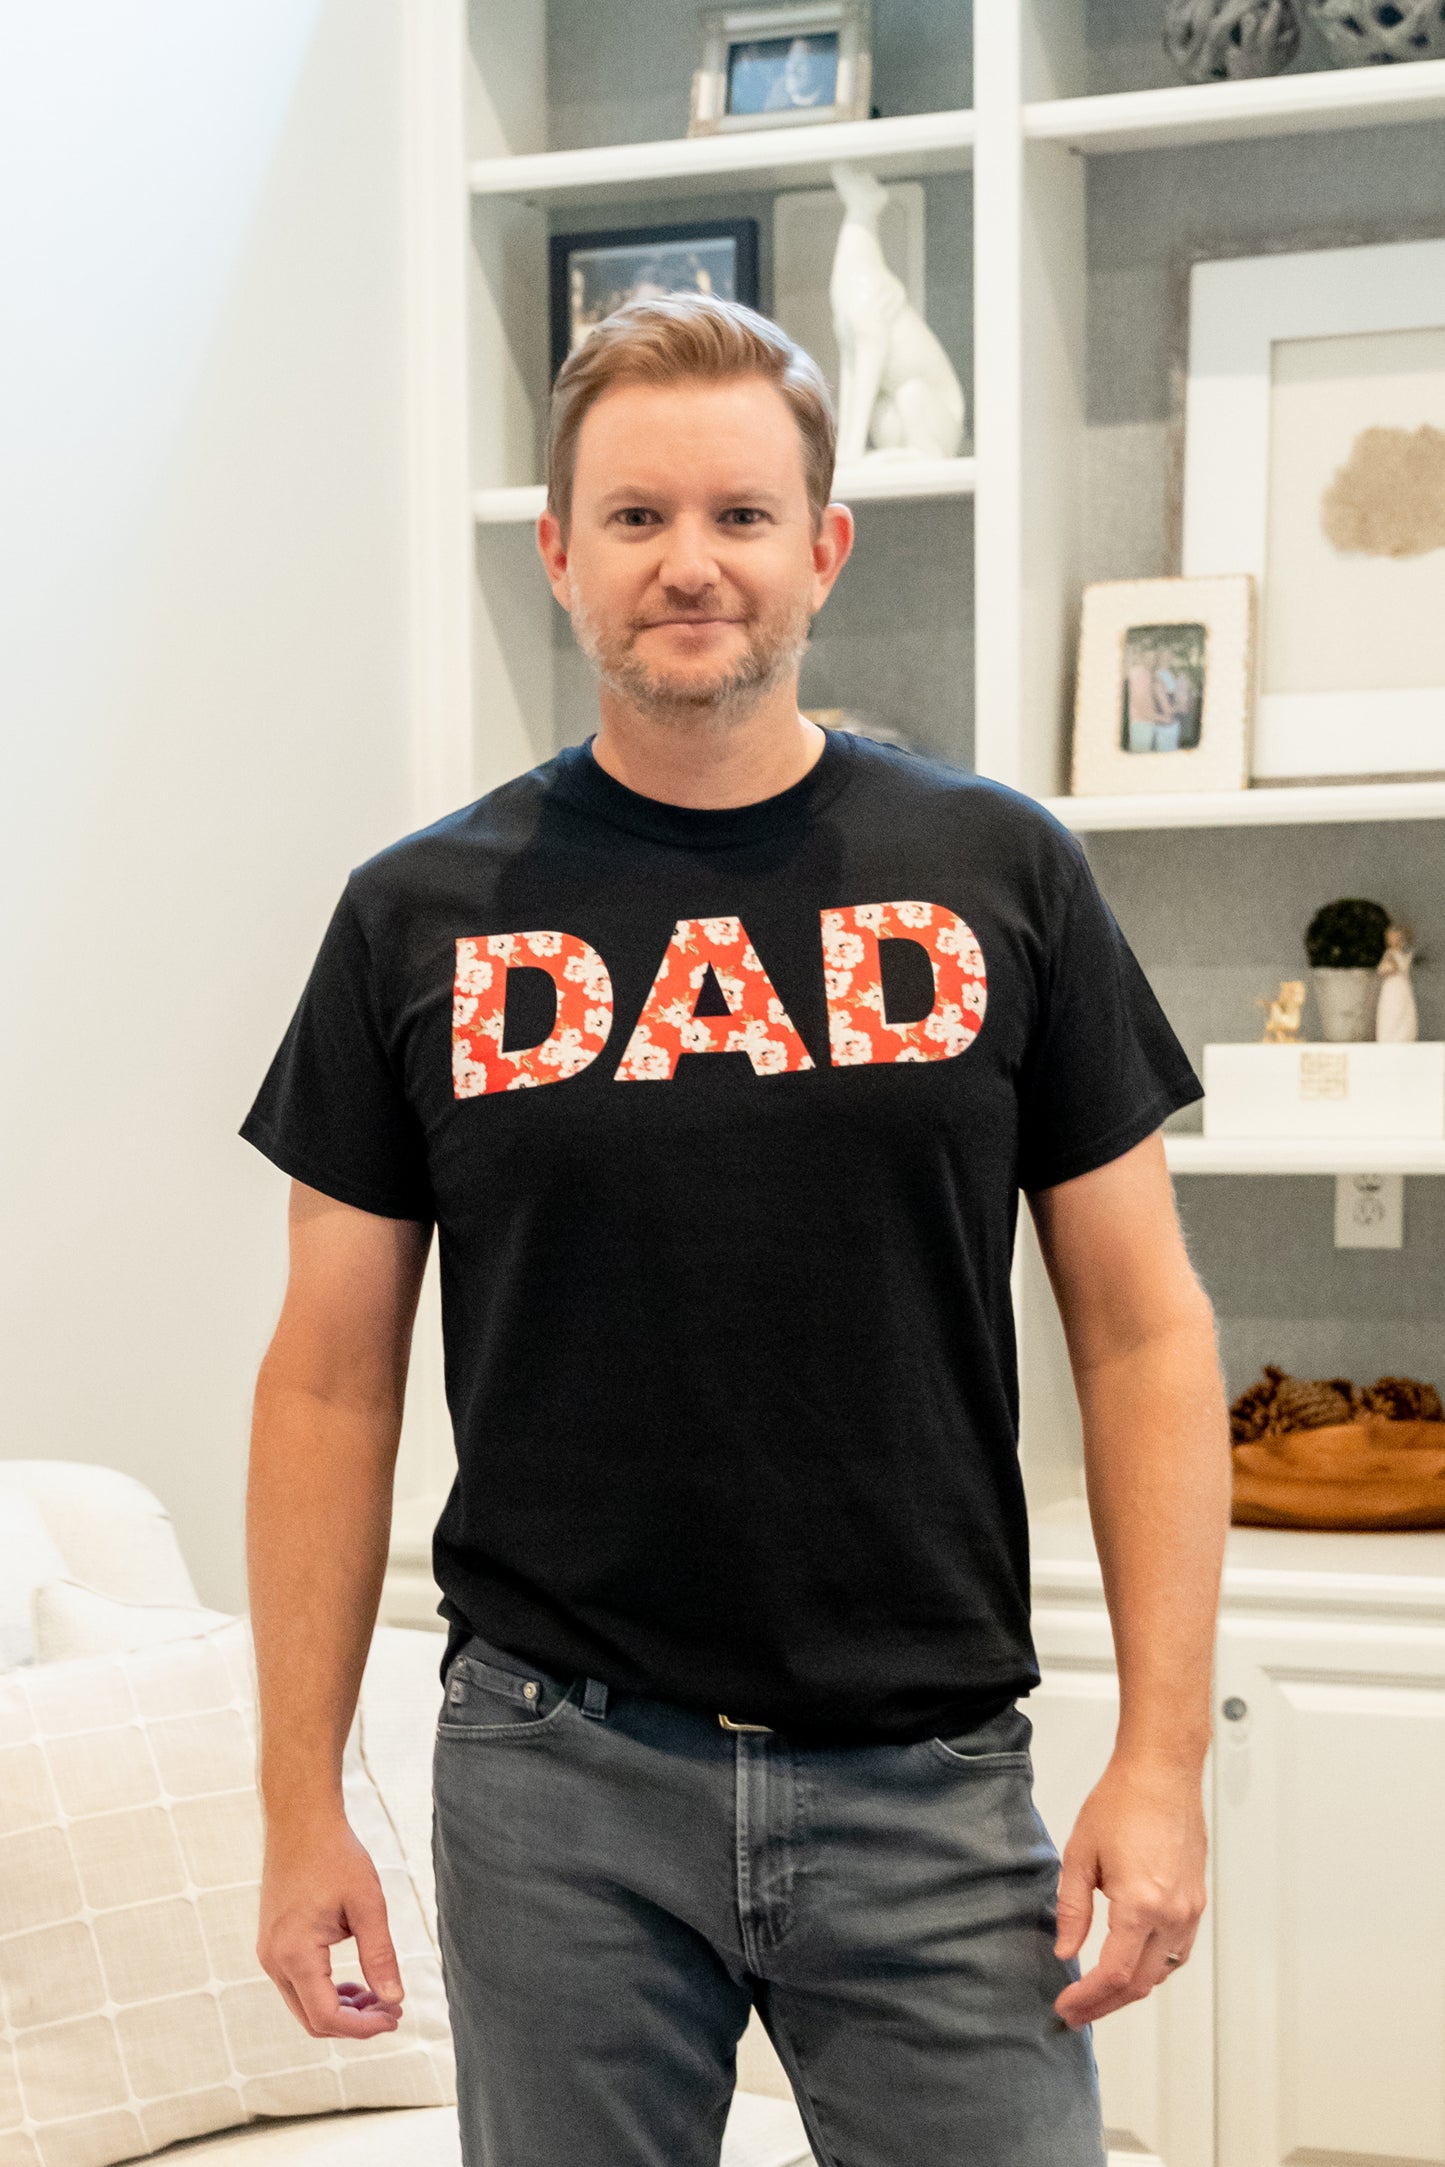 Sadie Dad T-shirt